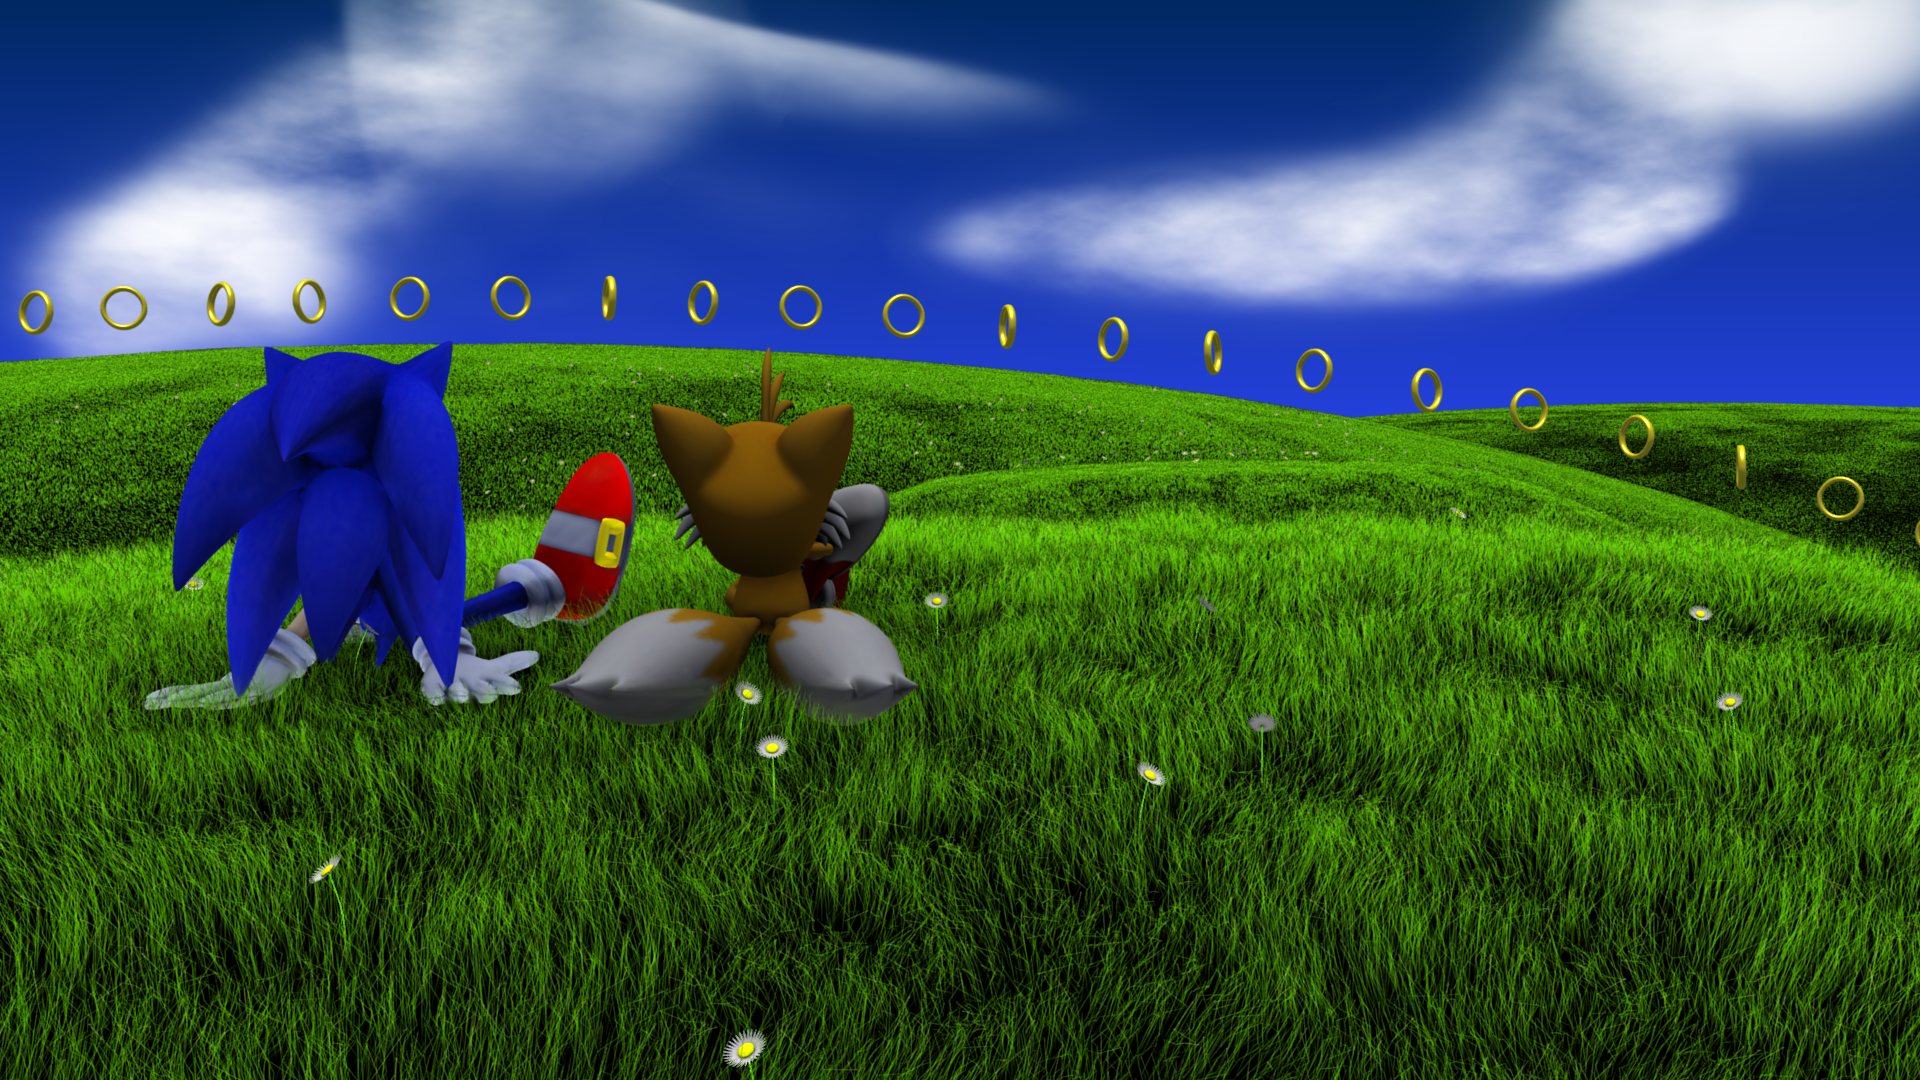 Compense The Sonic: Bạn đã bao giờ muốn khám phá thế giới của Sonic từ một góc nhìn khác biệt? Compense The Sonic sẽ cho bạn trải nghiệm độc đáo và thú vị về nhân vật cực kỳ đáng yêu này. Vào và xem ngay hình ảnh để tìm hiểu về những điều thú vị mà Compense The Sonic mang lại nhé!